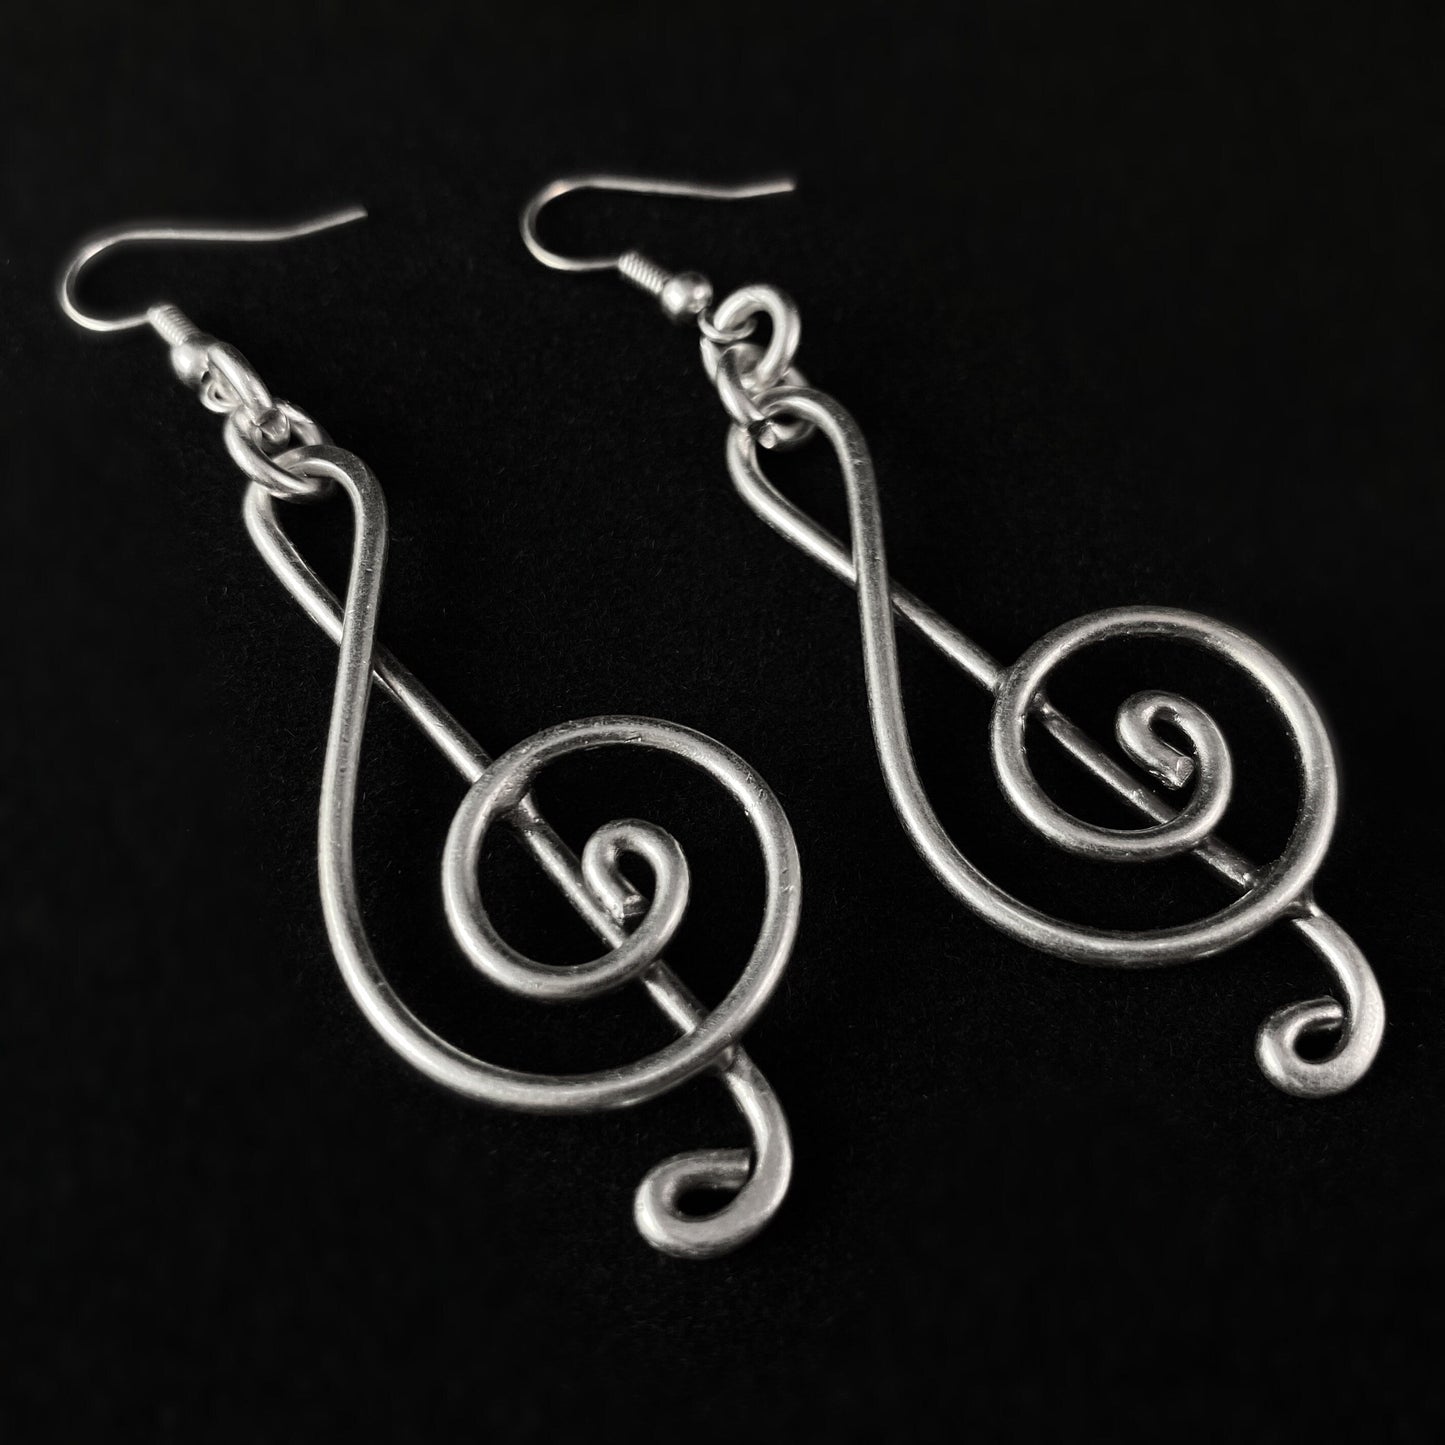 Silver Music Staff Drop Earrings, Handmade, Nickel Free - Elegant Minimalist Jewelry for Women